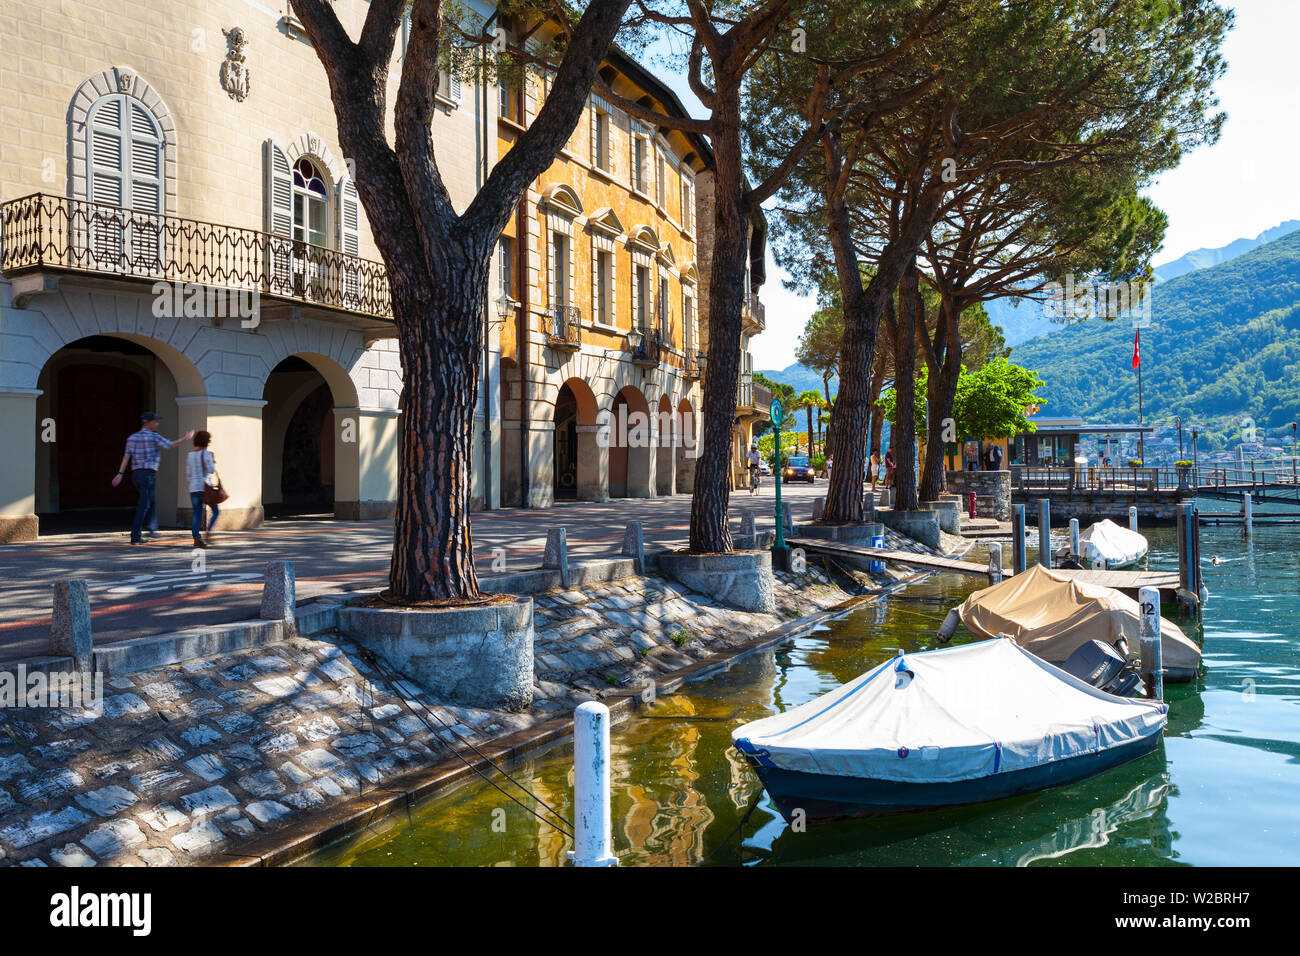 L'idyllique village au bord du lac de Vico Morcote, Lac de Lugano, Tessin, Suisse Banque D'Images